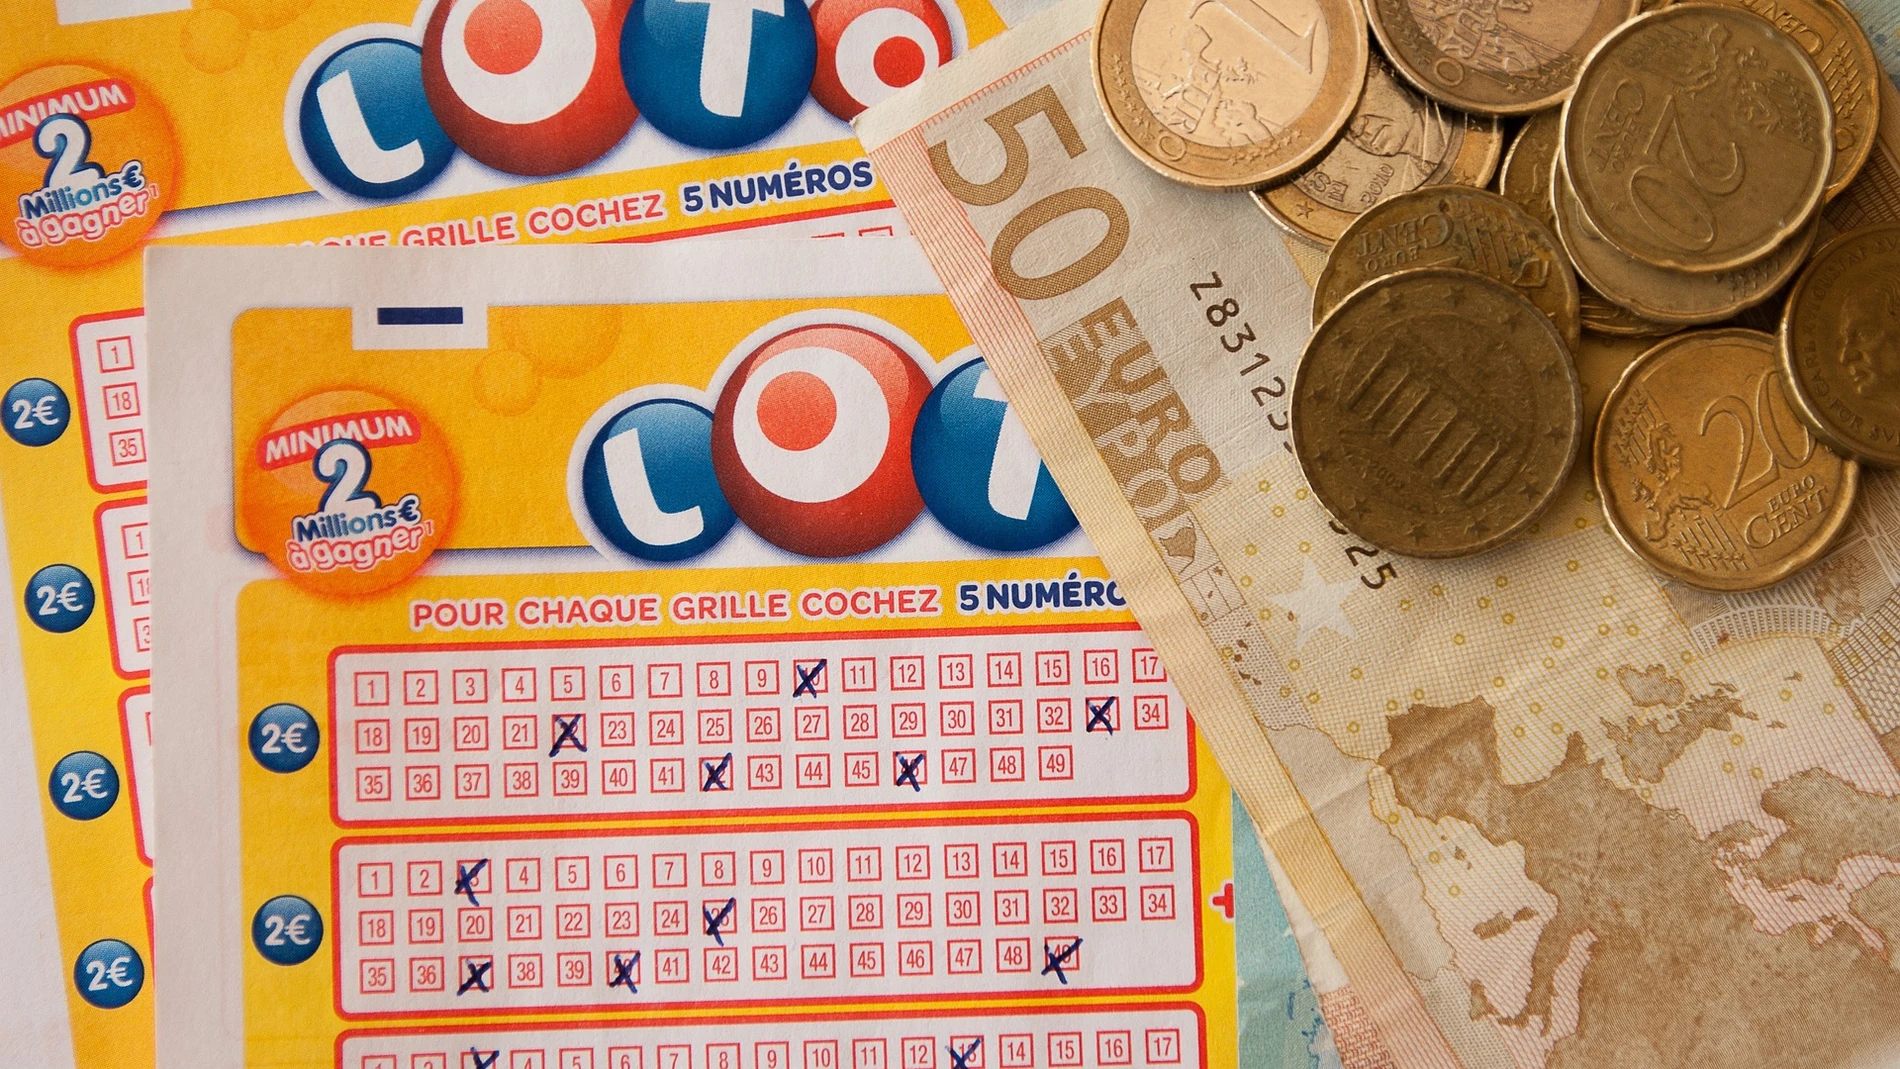 Imagen de un boleto de lotería